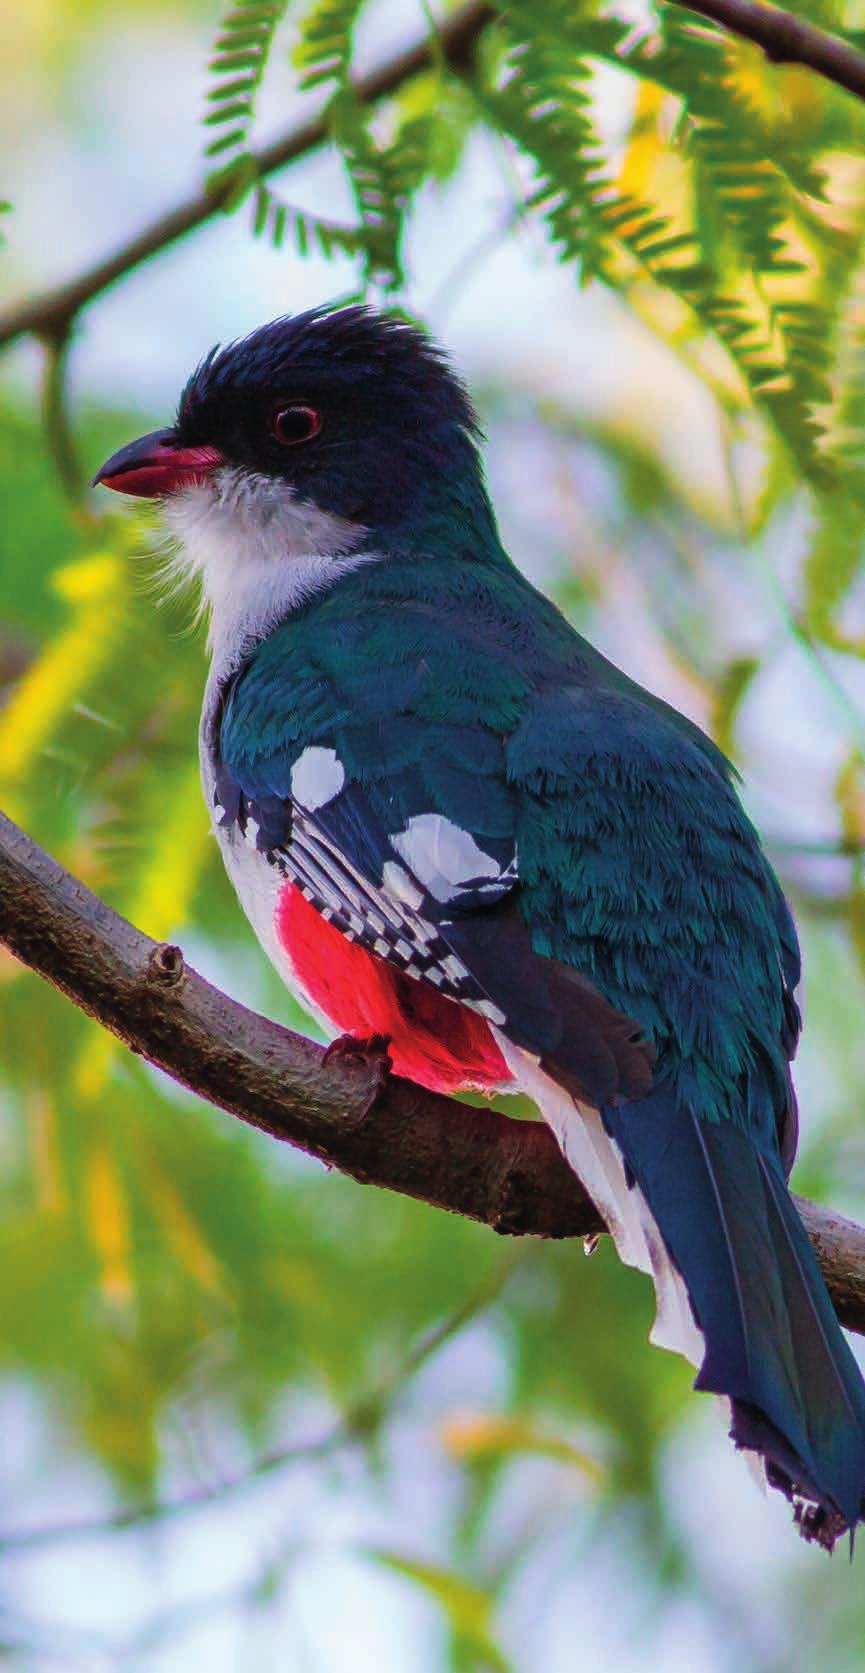 La vegetazione è rigogliosa e ci vivono oltre 77 specie di uccelli come il Tocororo, uccello scelto come simbolo nazionale e rappresentato su monete e